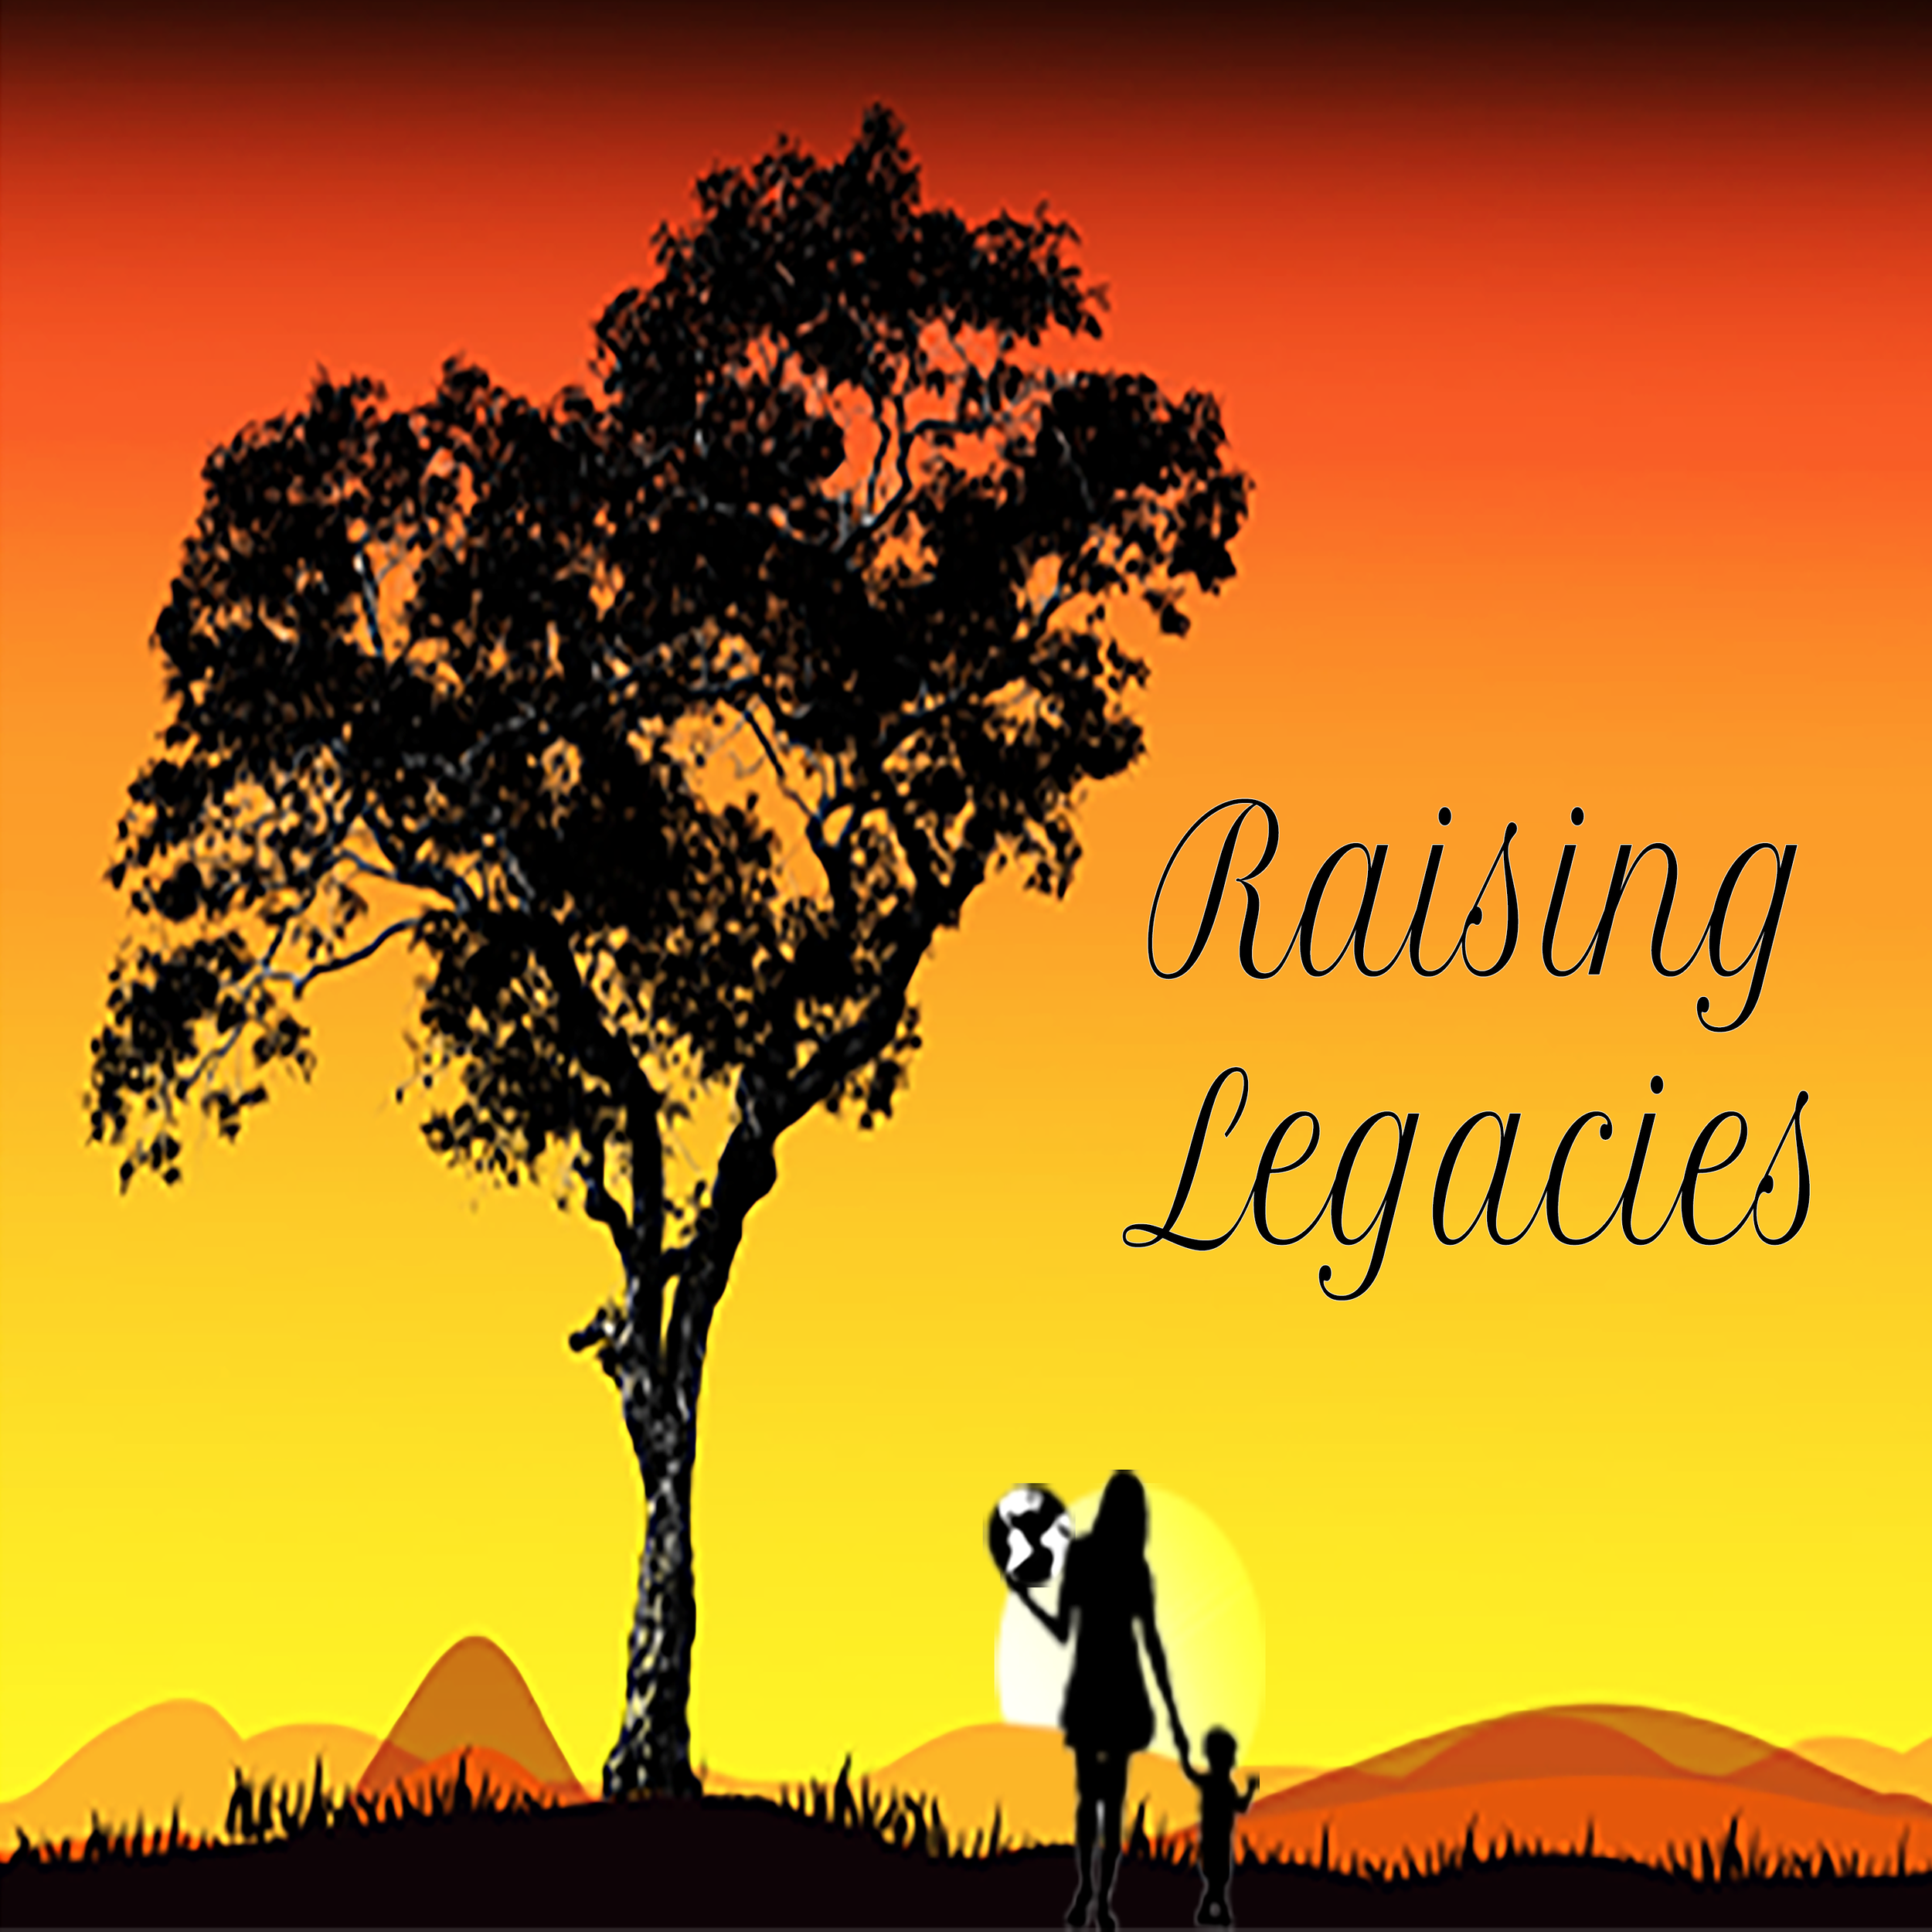 raising-legacies-mom-son-website-banner-black-lettering-BIG-SIZE.png